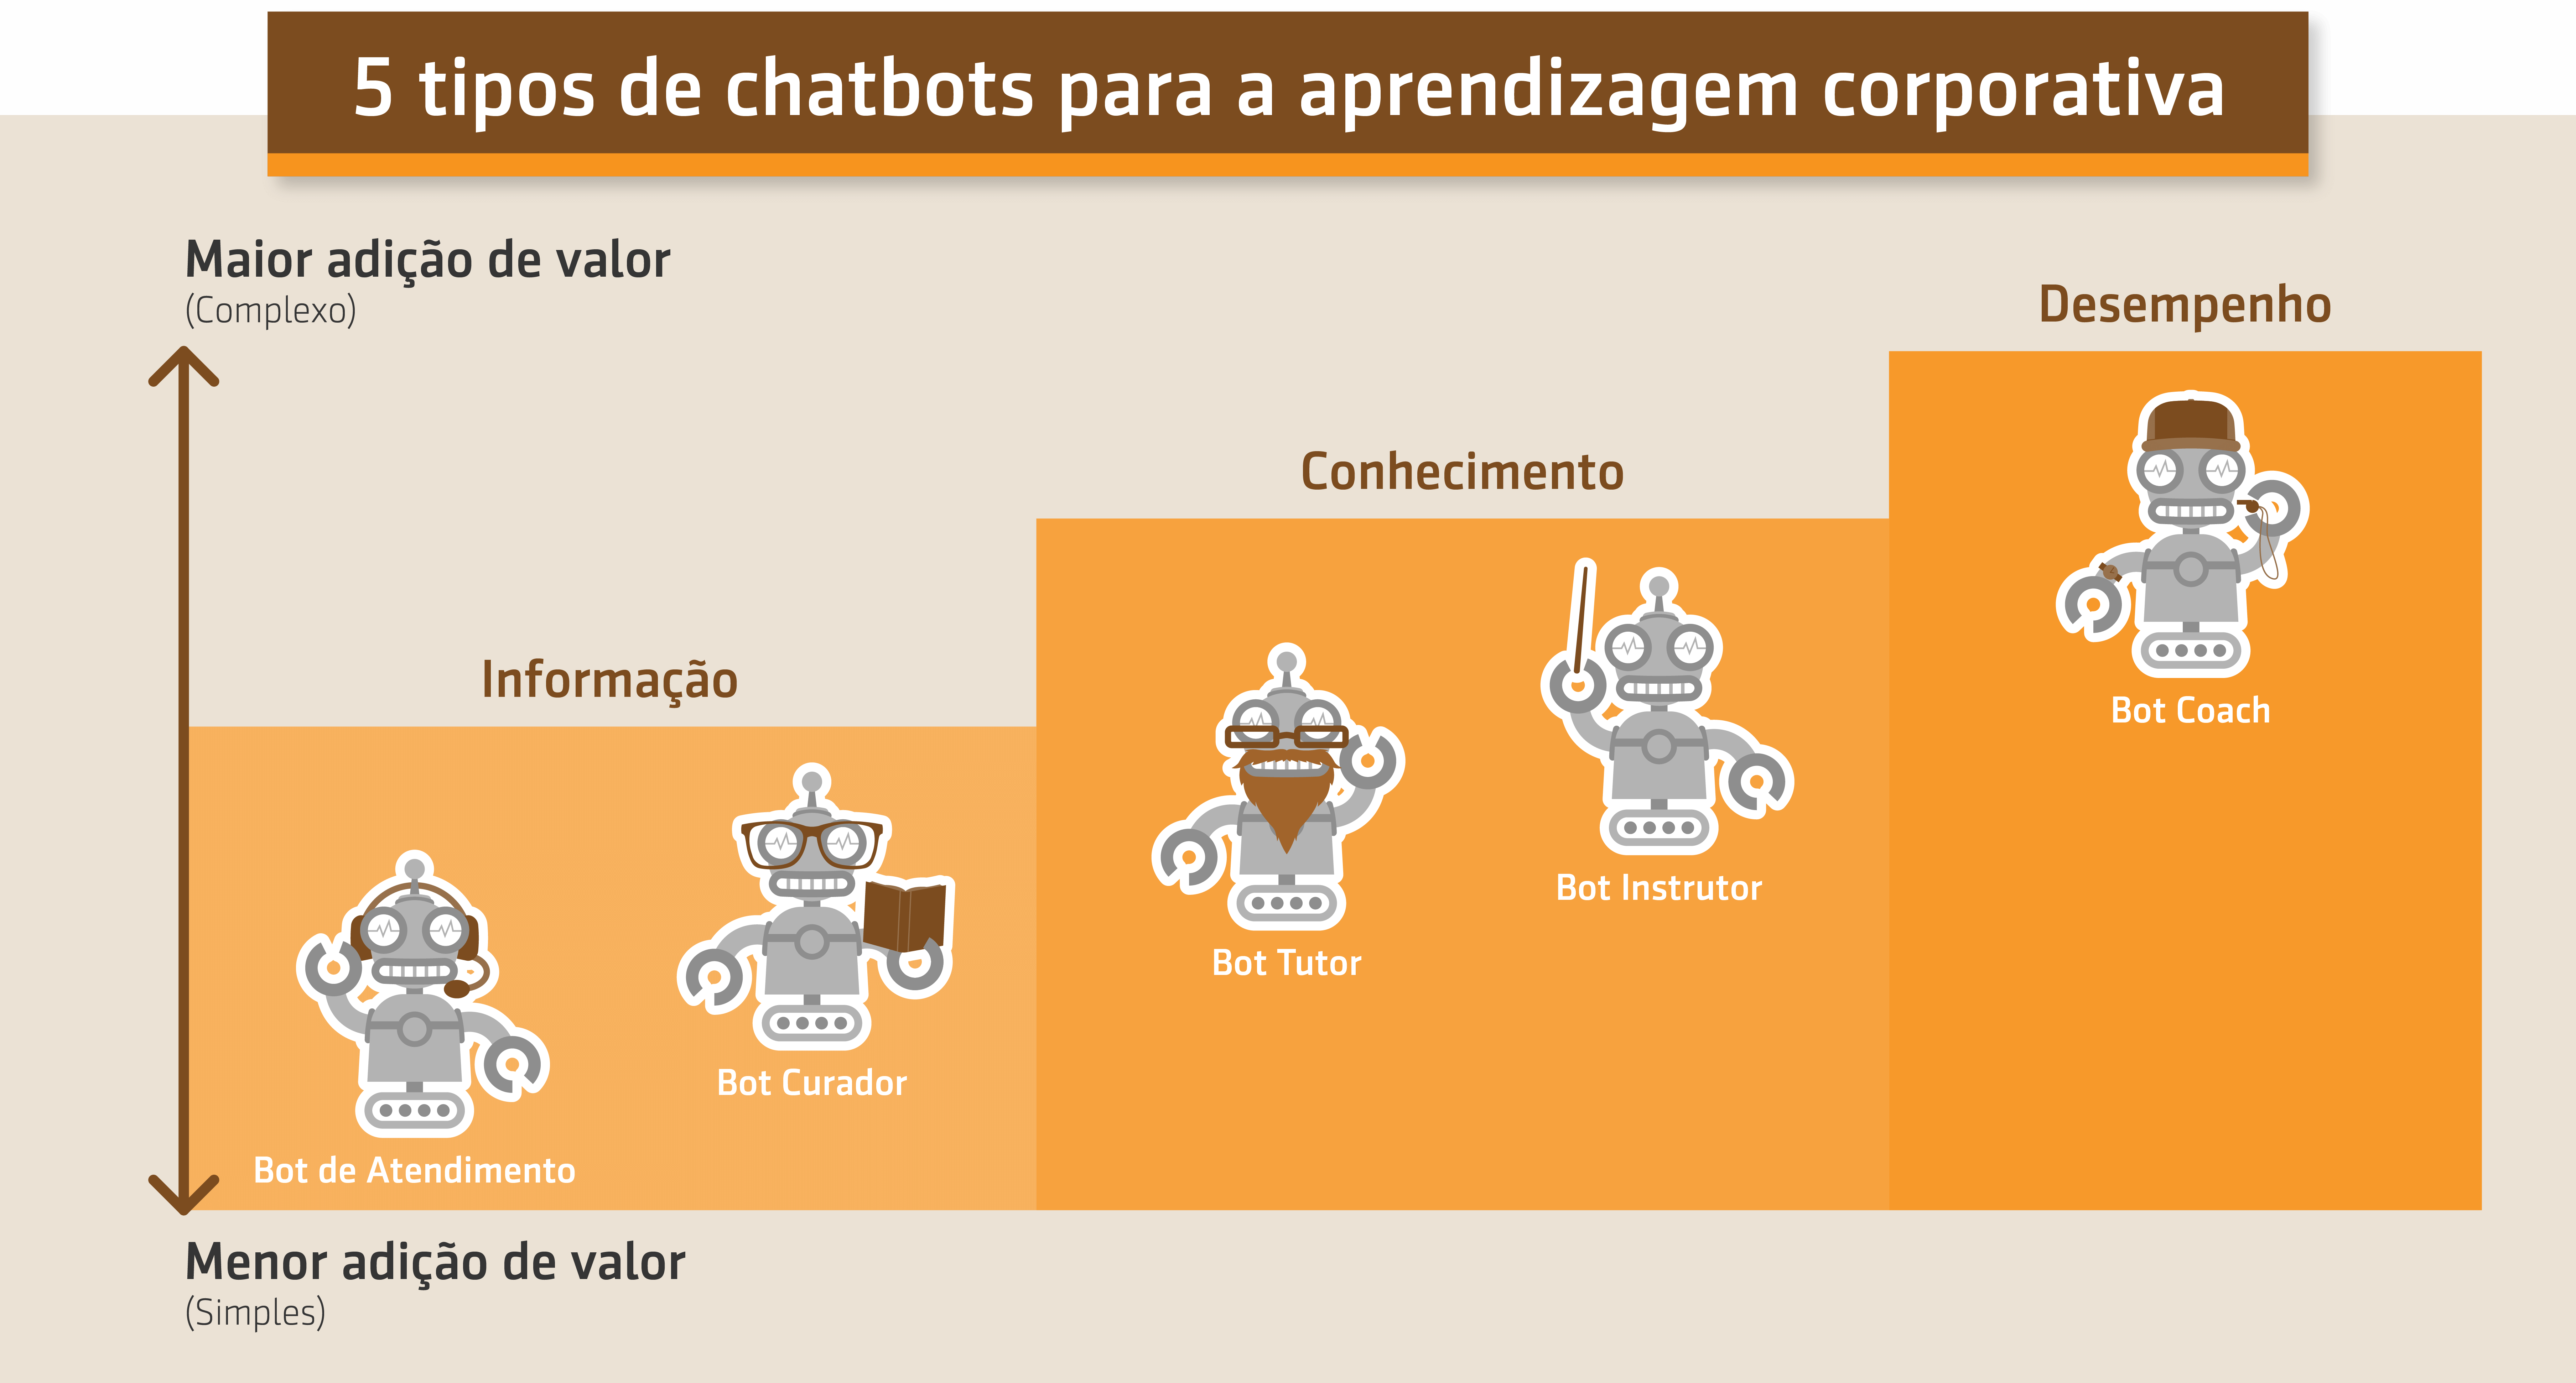 Resumo da aula Prof. Wagner Cassimiro sobre os 5 tipos de chatbots para a aprendizagem corporativa